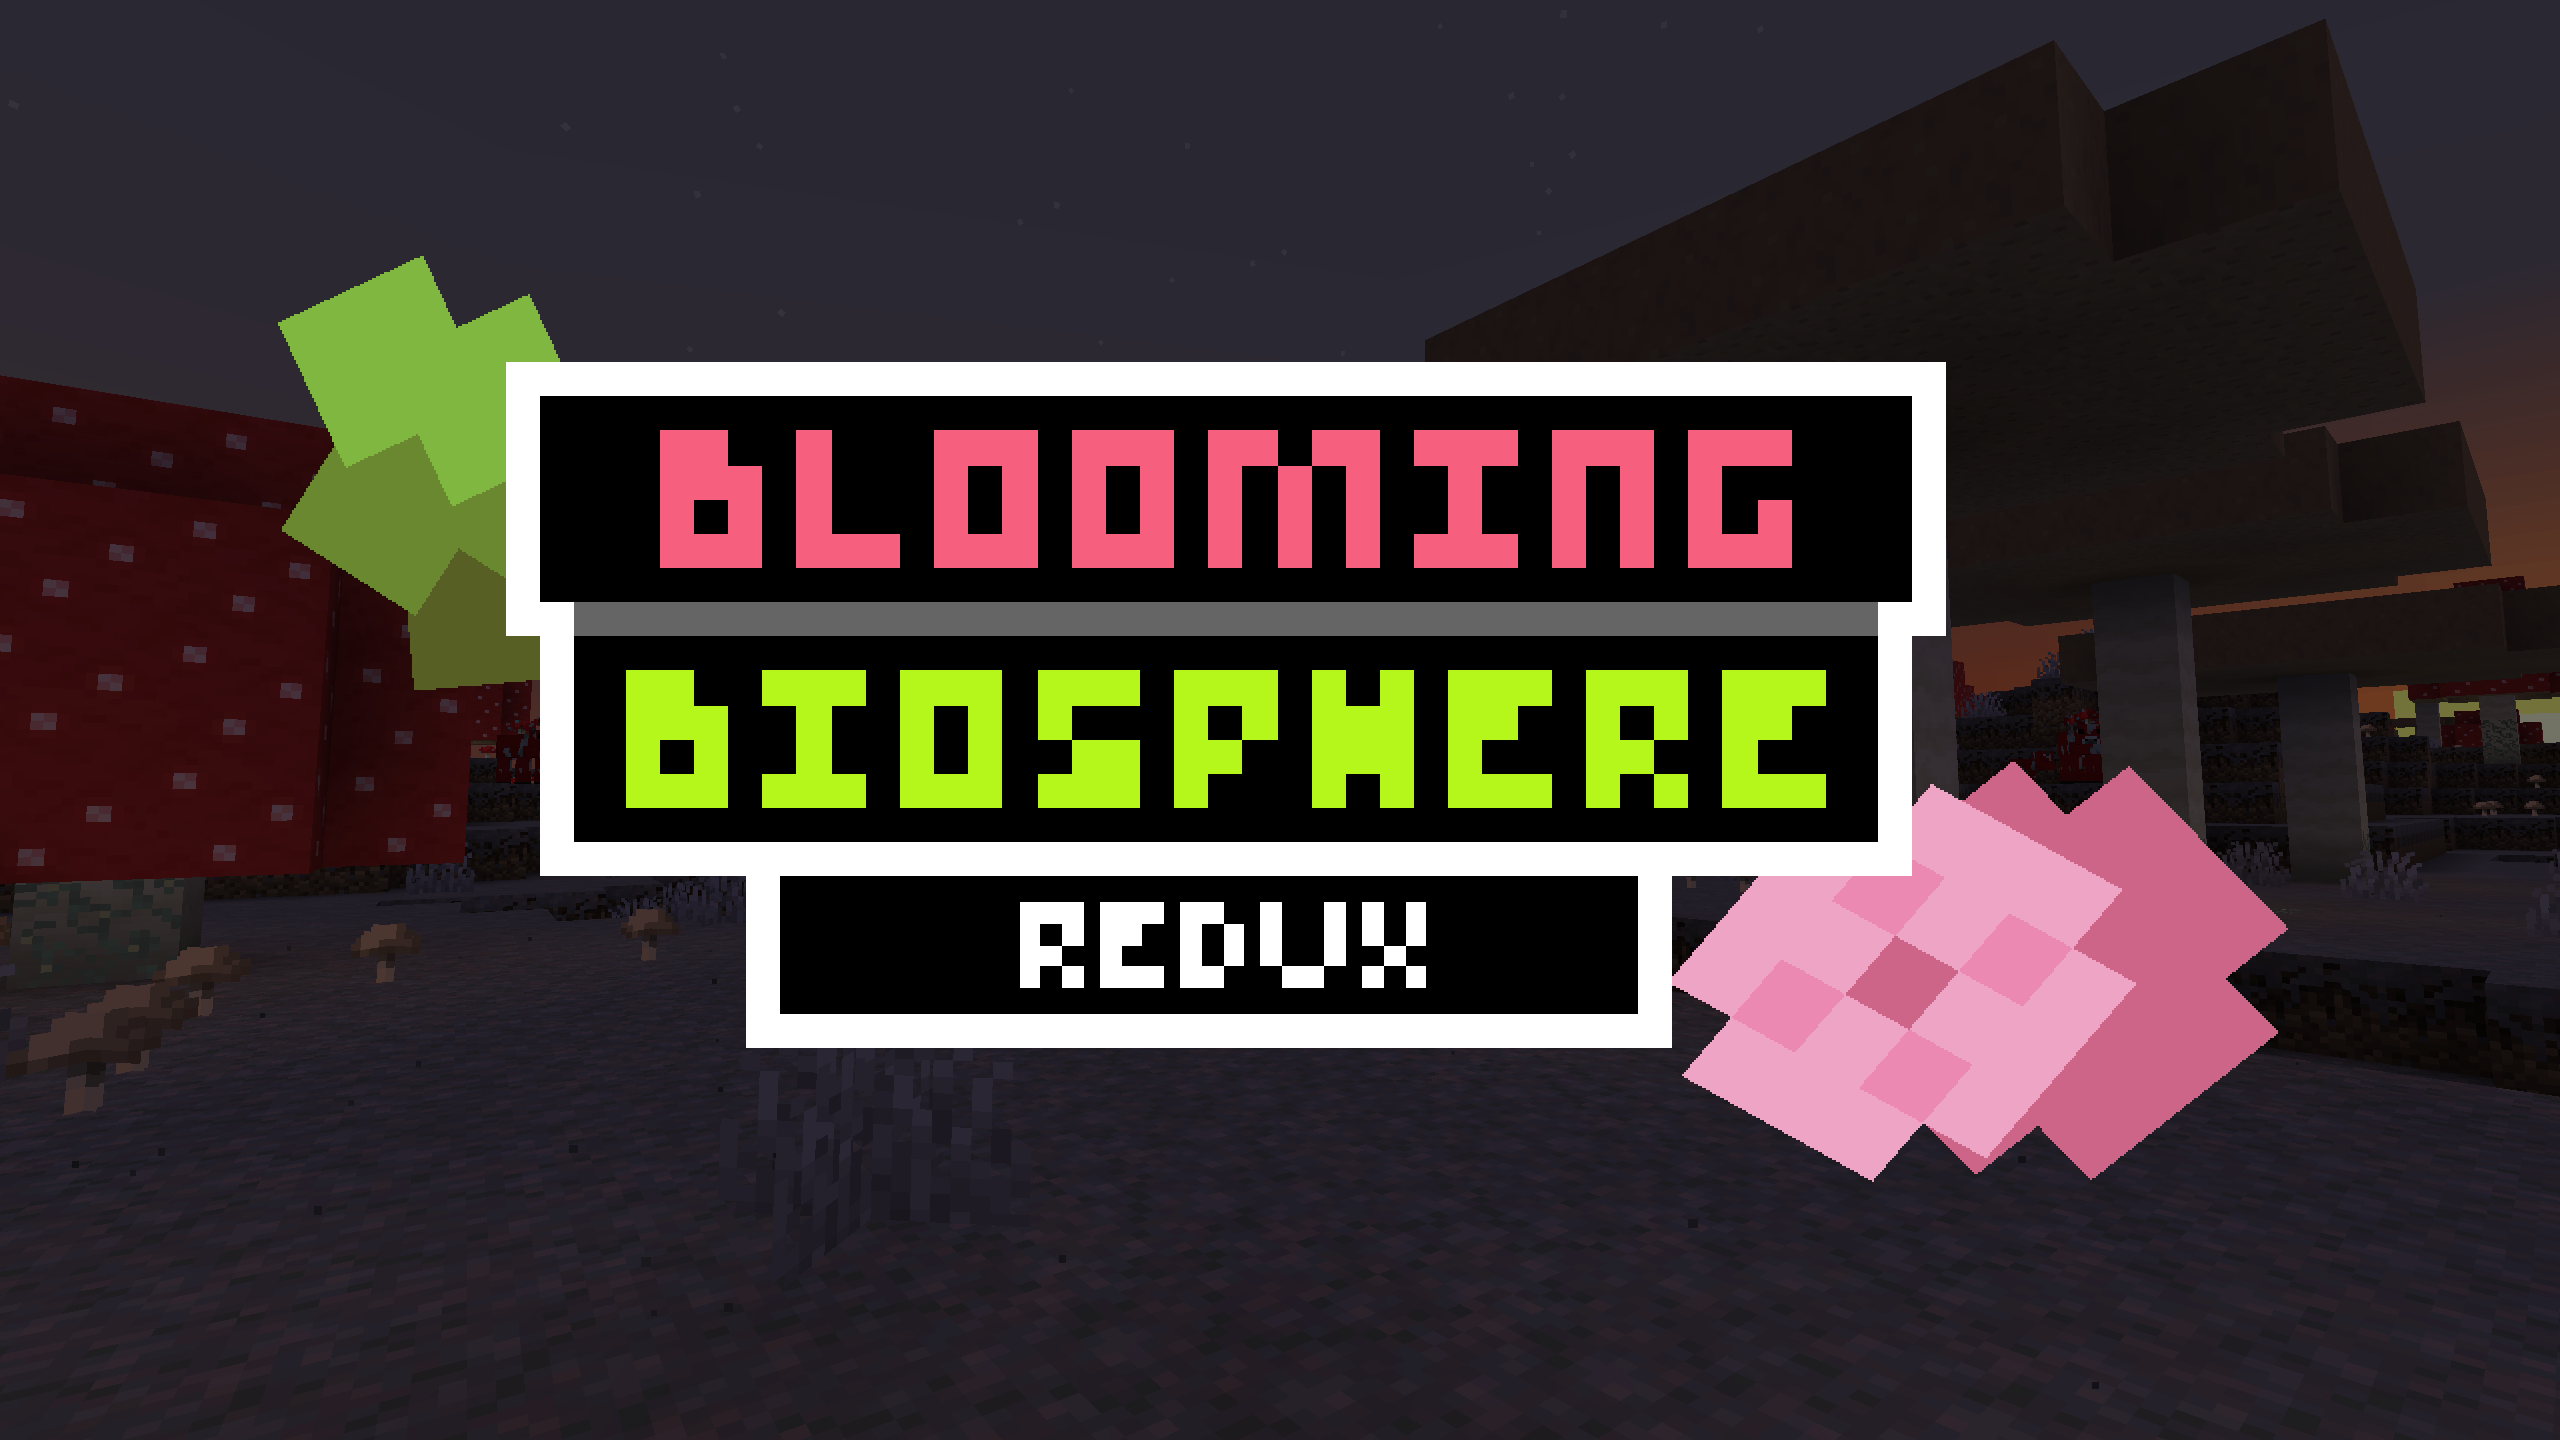 Blooming Biosphere Wide Logo